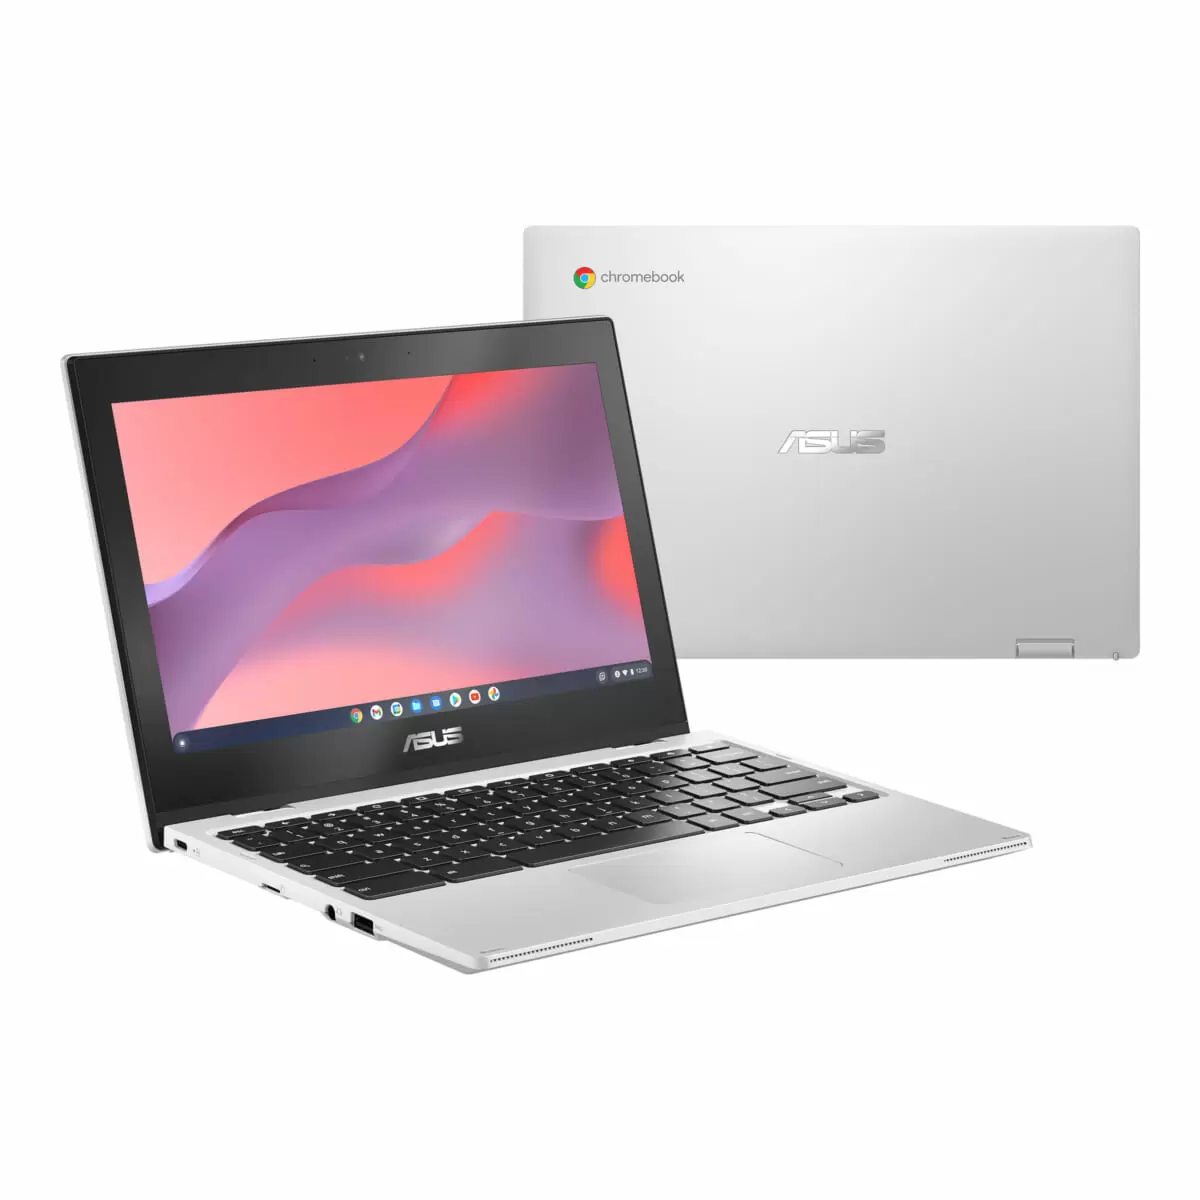 Chromebook Flip CX1(CX1102)